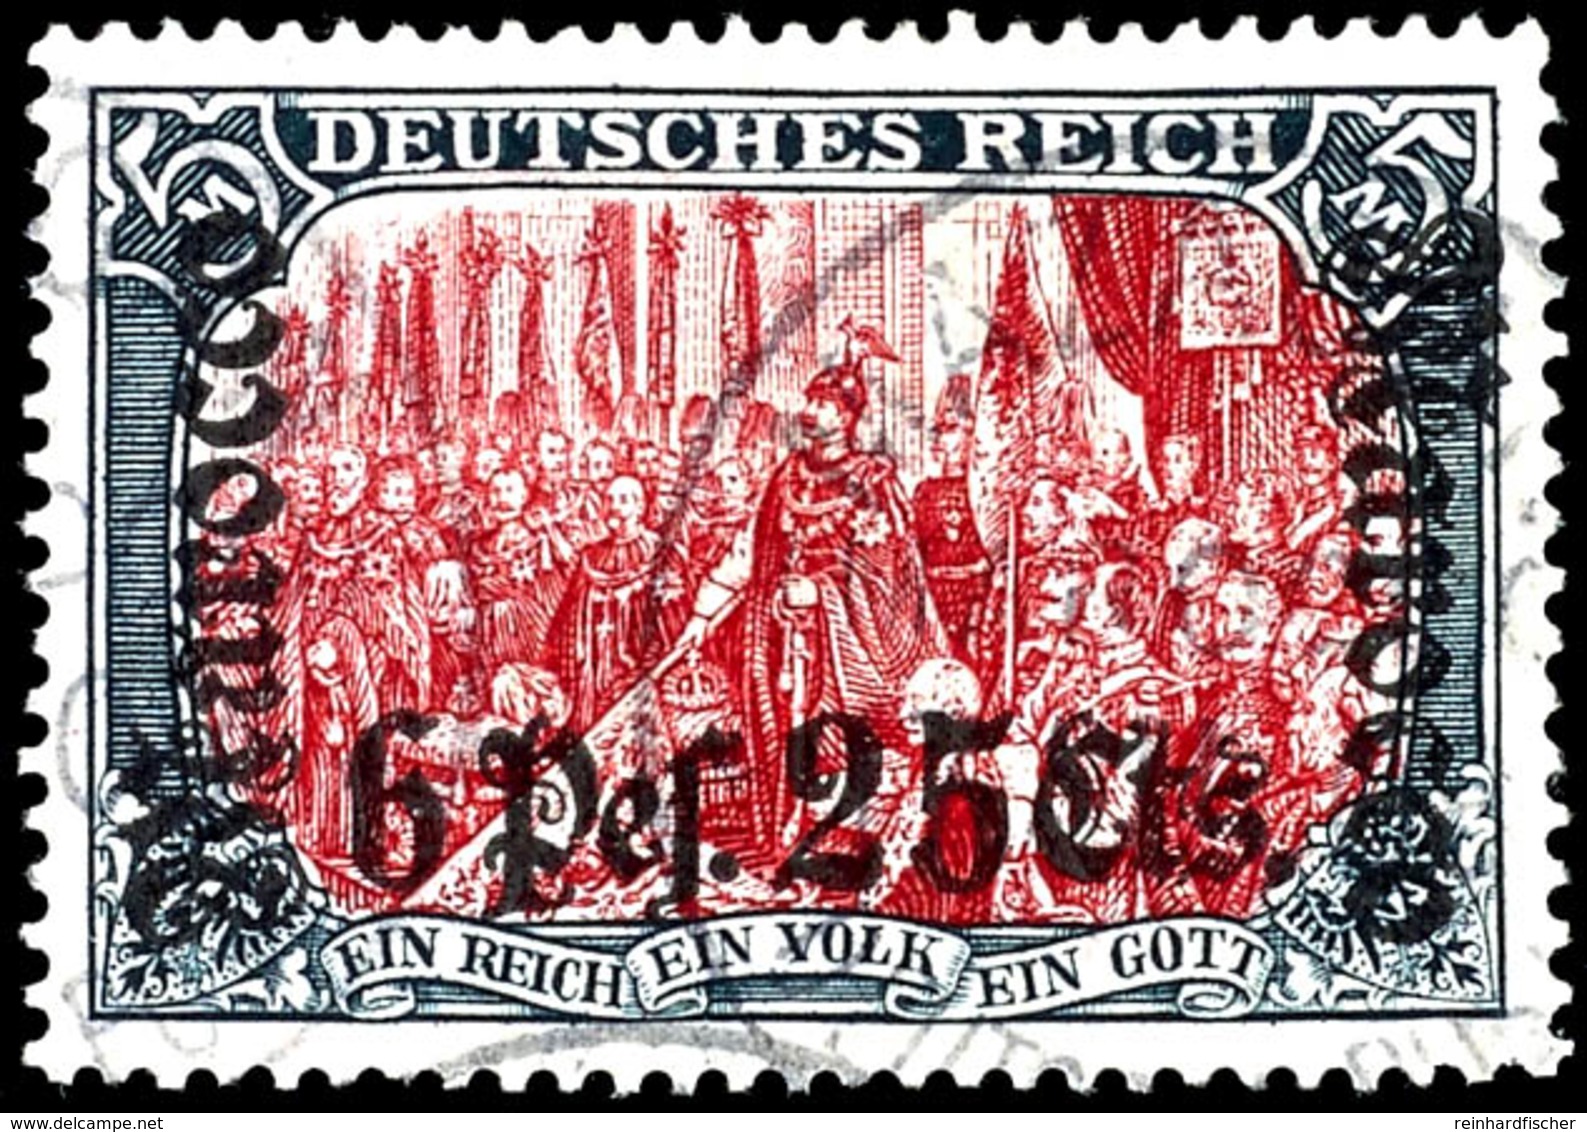 5 Mark Deutsches Reich Mit Wasserzeichen, Aufdruck "Marocco 6 Pes. 25 Cts.", Tadellos Gestempelt, Geprüft Steuer VÖB, Mi - Deutsche Post In Marokko